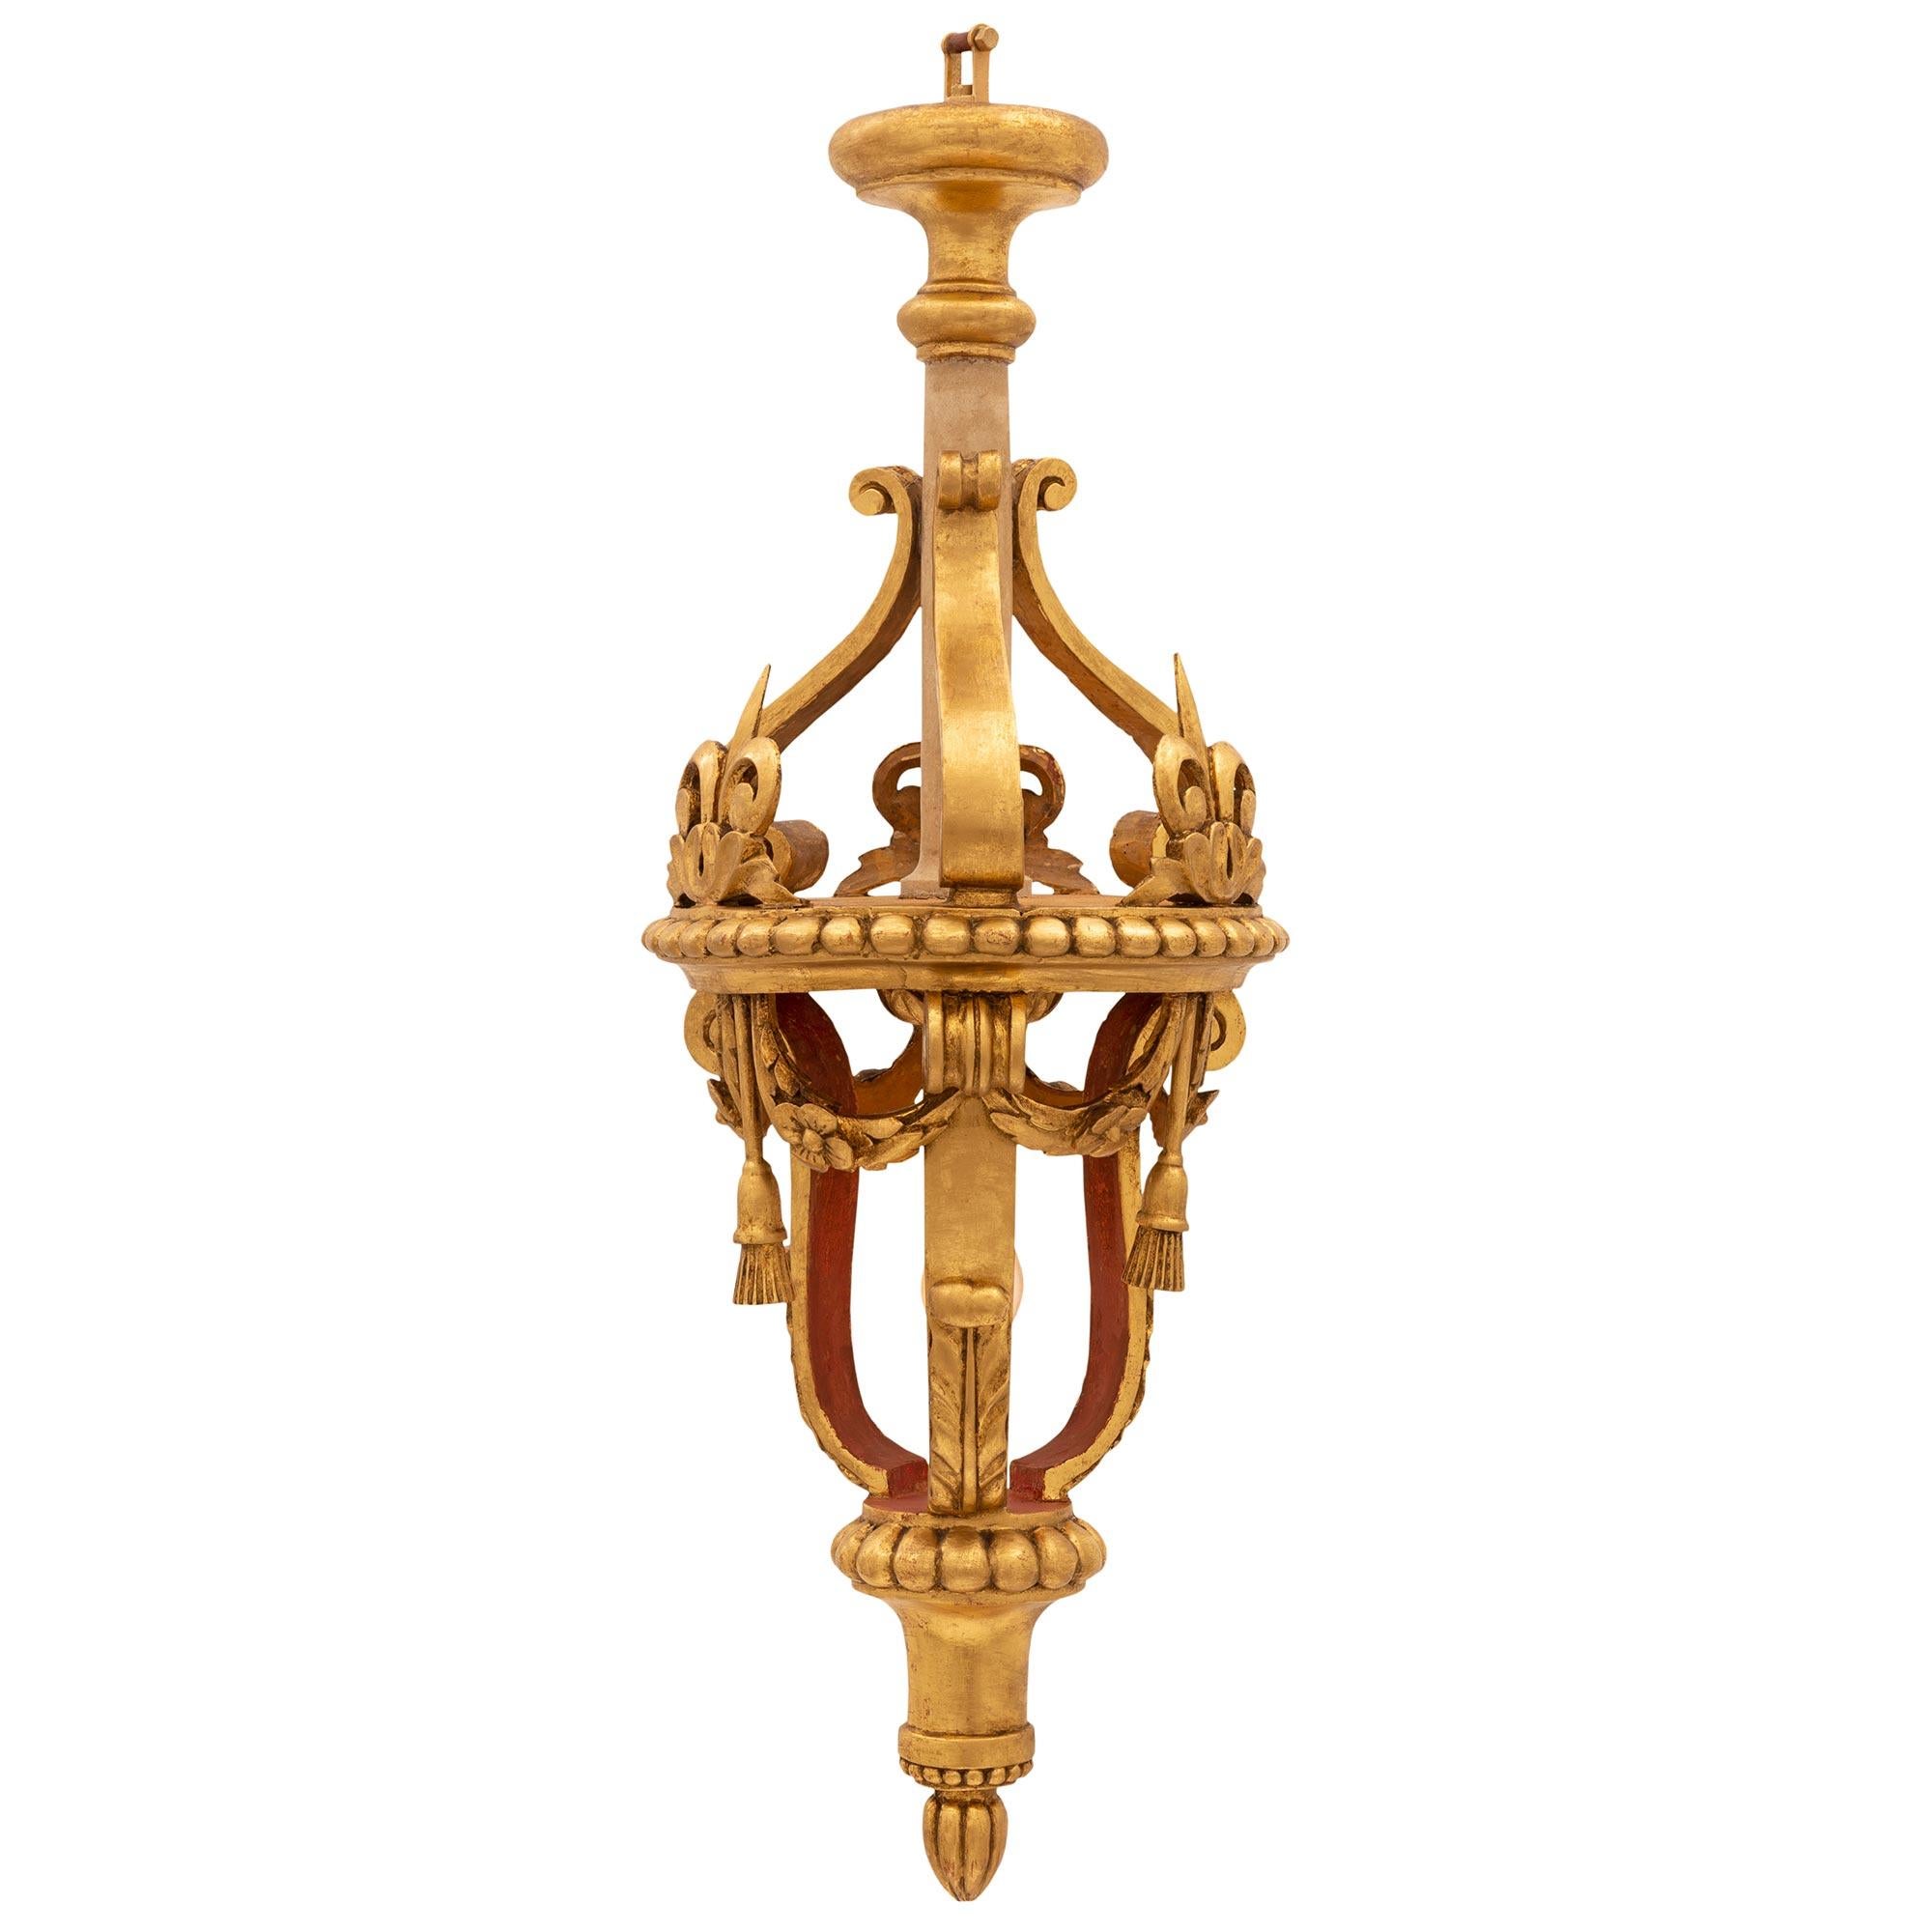 Une belle lanterne italienne du 18ème siècle, de style baroque en bois doré. La lanterne est centrée par un charmant épi de faîtage en forme de feuillage au-dessous d'un support élégamment incurvé et d'un bandeau cannelé enveloppant. Trois supports